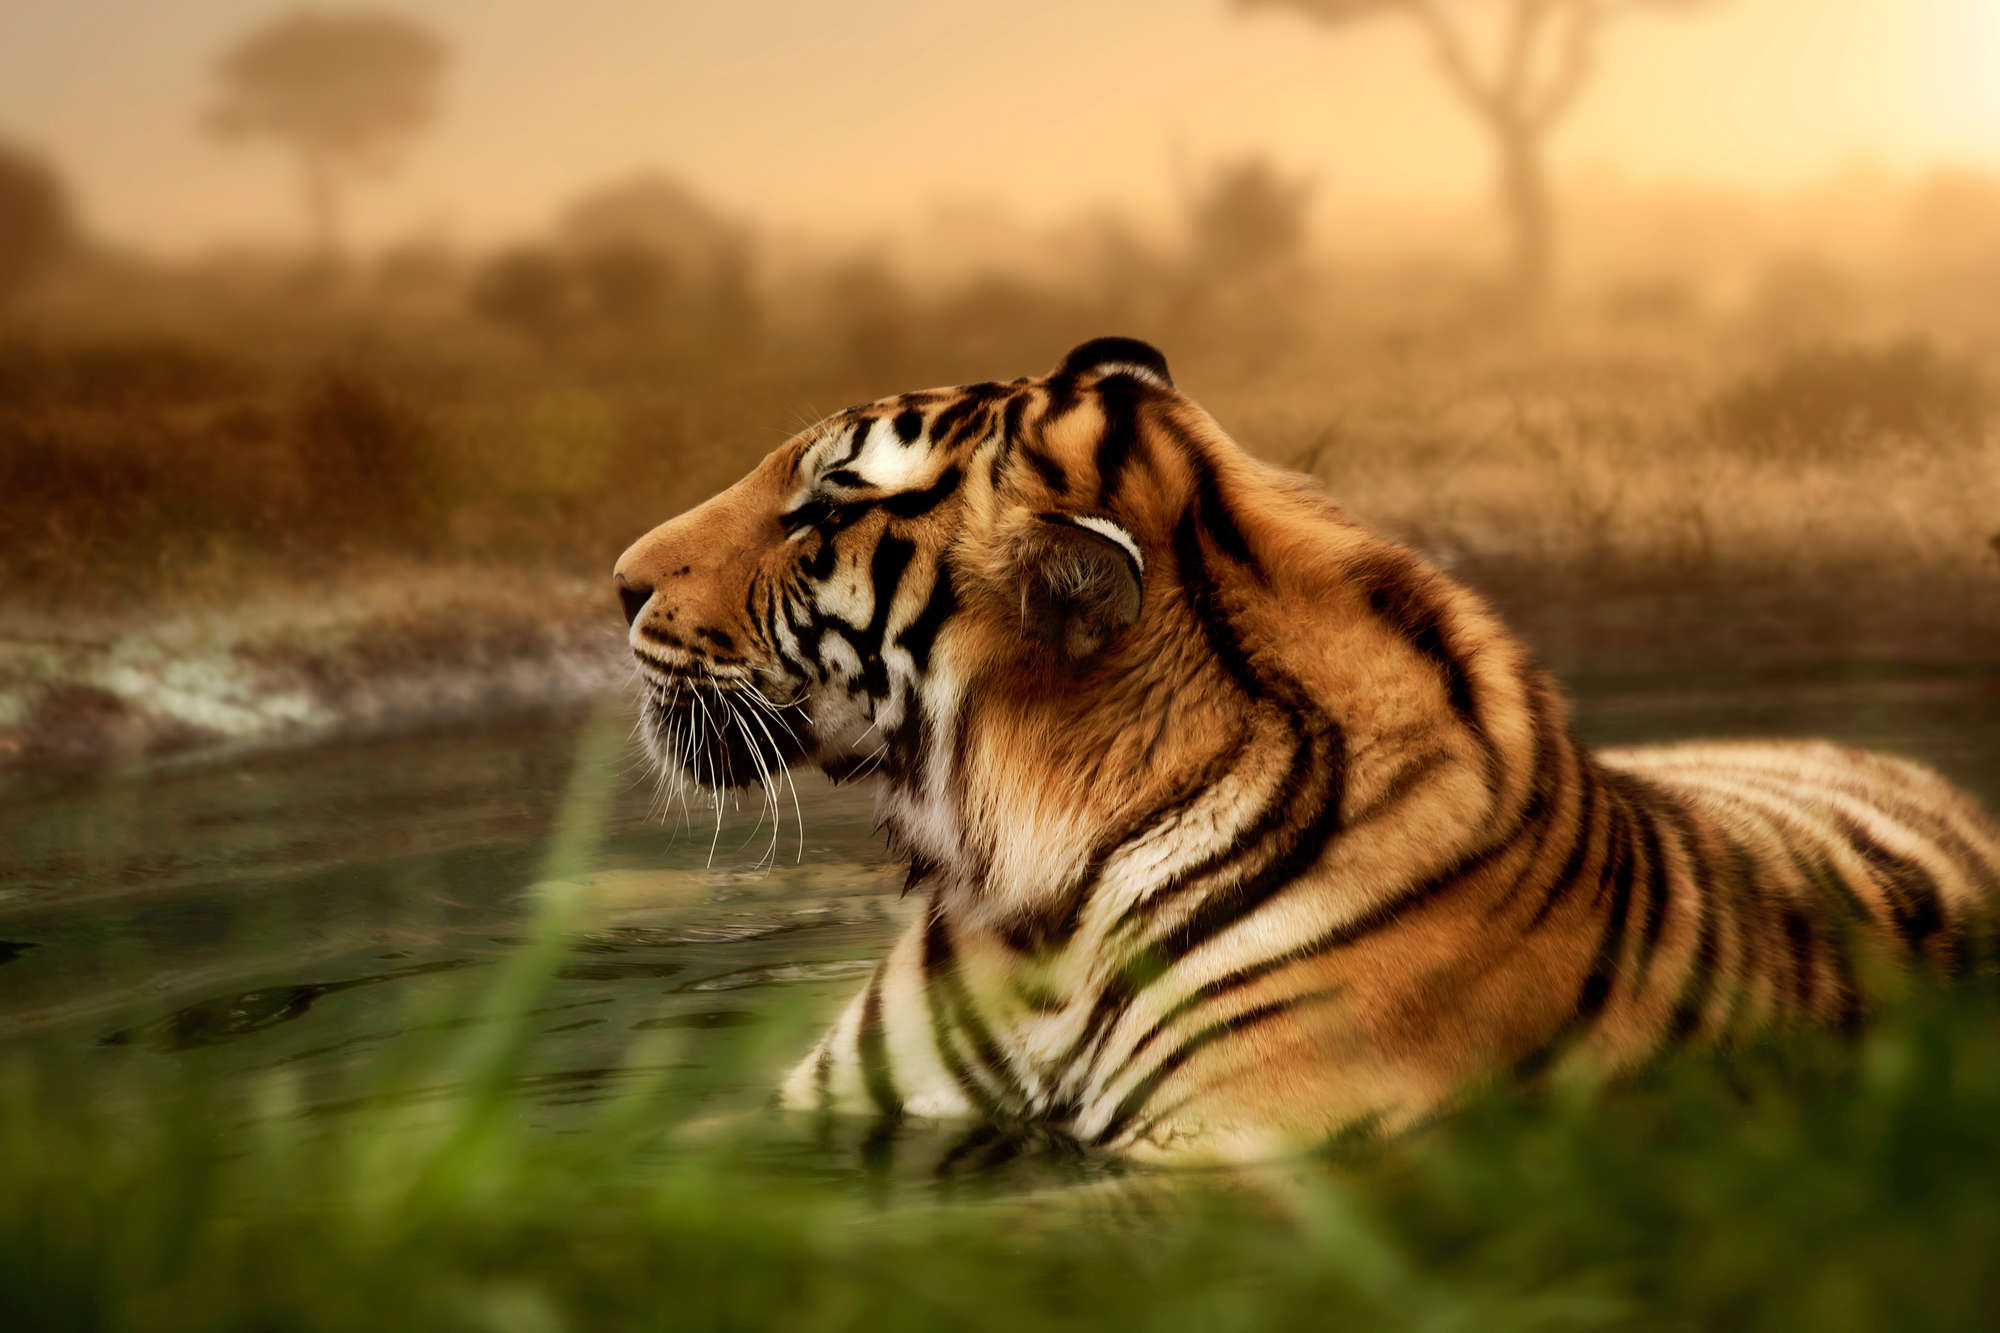             Papel pintado de tigre en la naturaleza sobre vellón texturizado
        